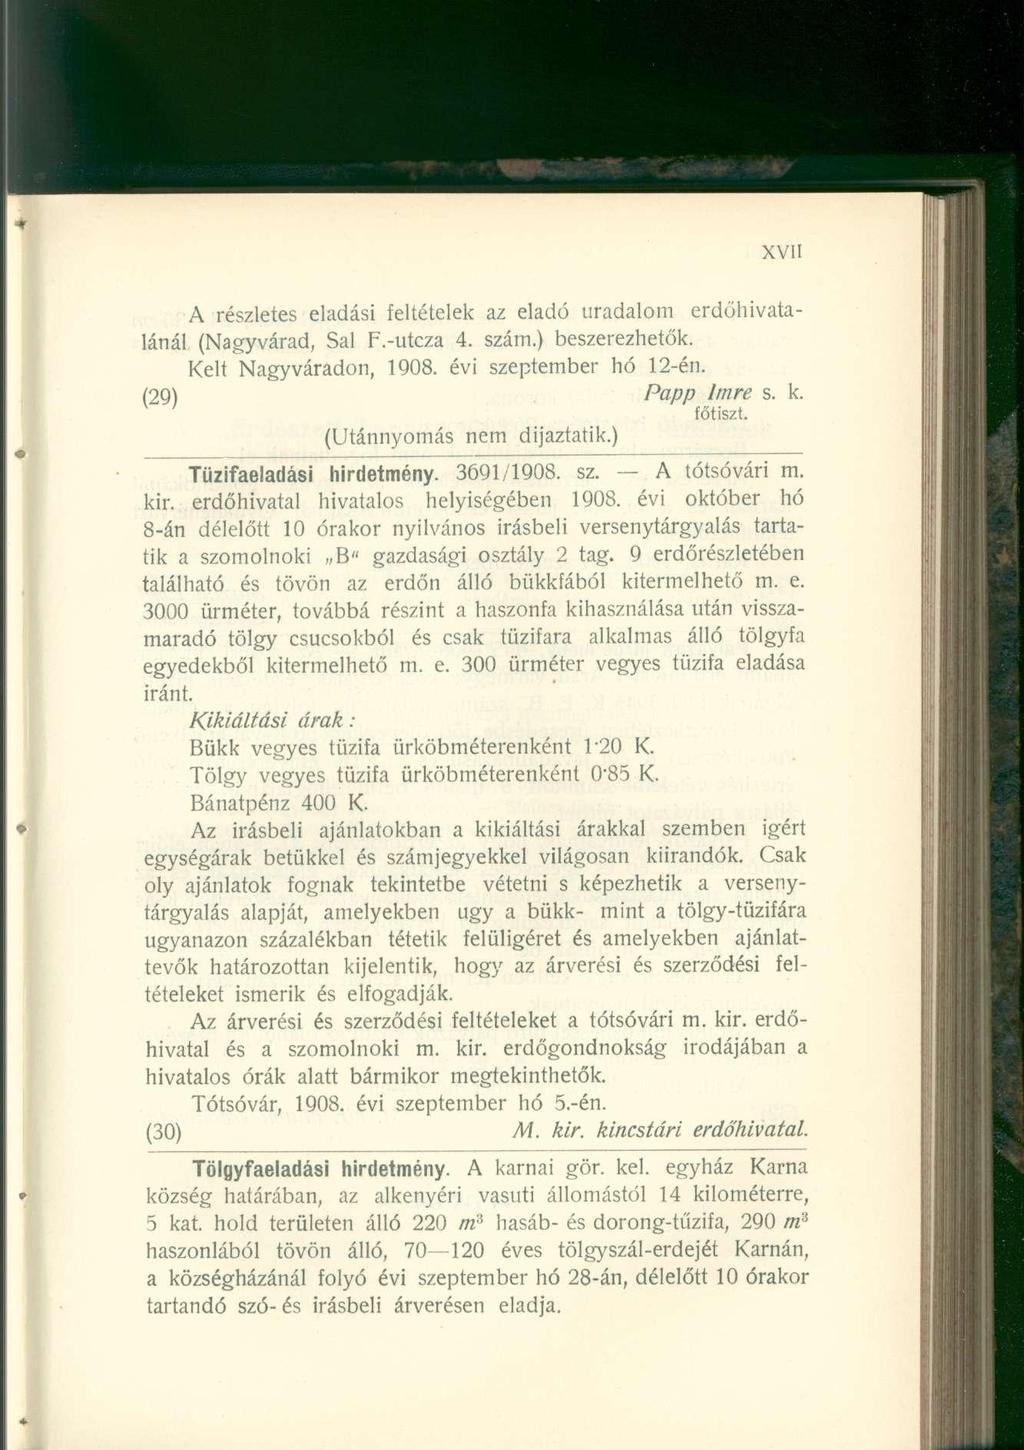 A részletes eladási feltételek az eladó uradalom erdőhivatalánál (Nagyvárad, Sal F.-utcza 4. szám.) beszerezhetők. Kelt Nagyváradon, 1908. évi szeptember hó 12-én. (29) Papp Imre s. k. főtiszt.